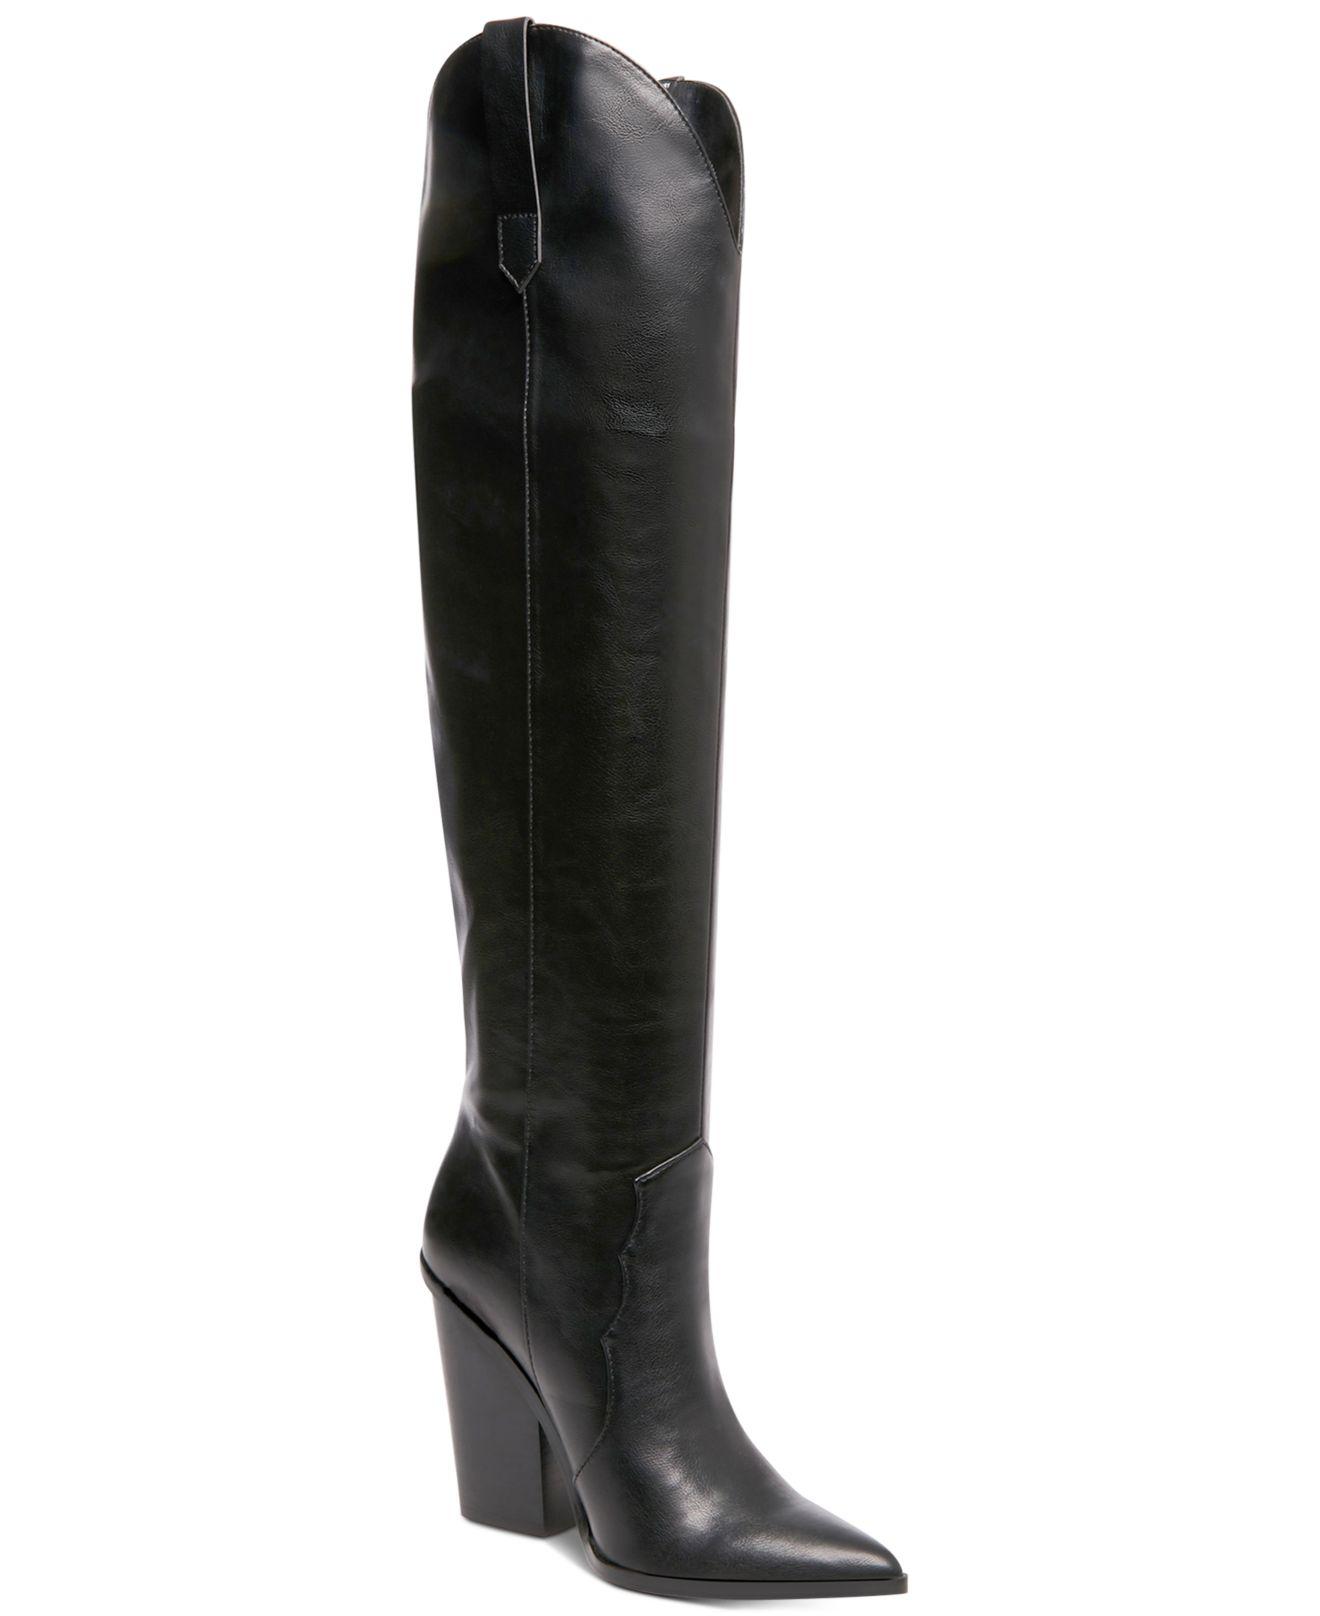 Women's Steve Madden Ranger Knee High Boot Black Synthetic